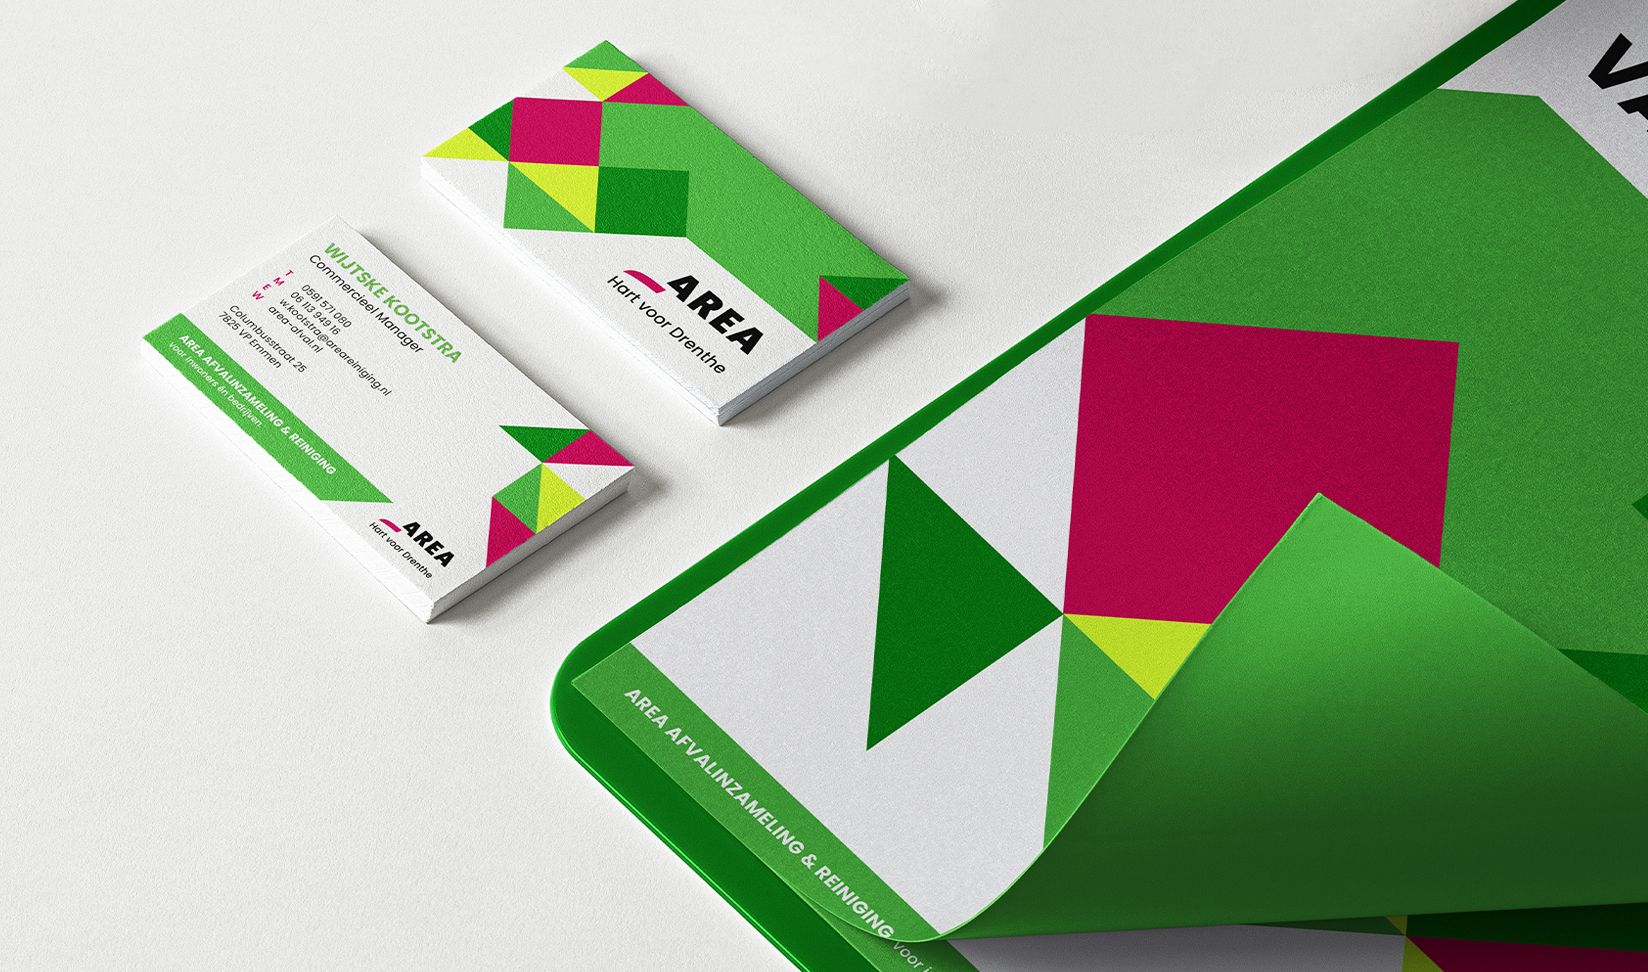 AREA landscape 1 business cards